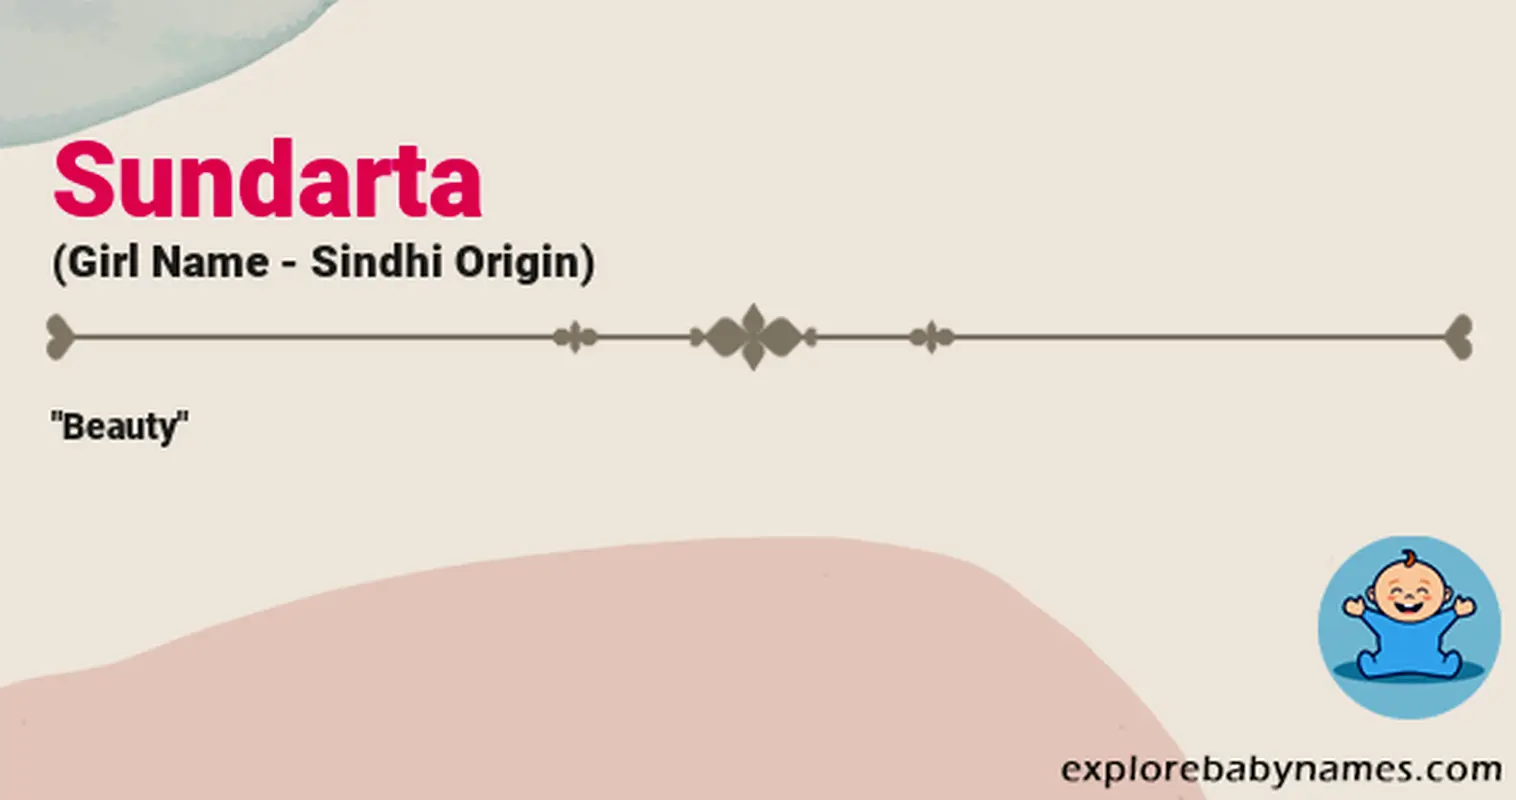 Meaning of Sundarta